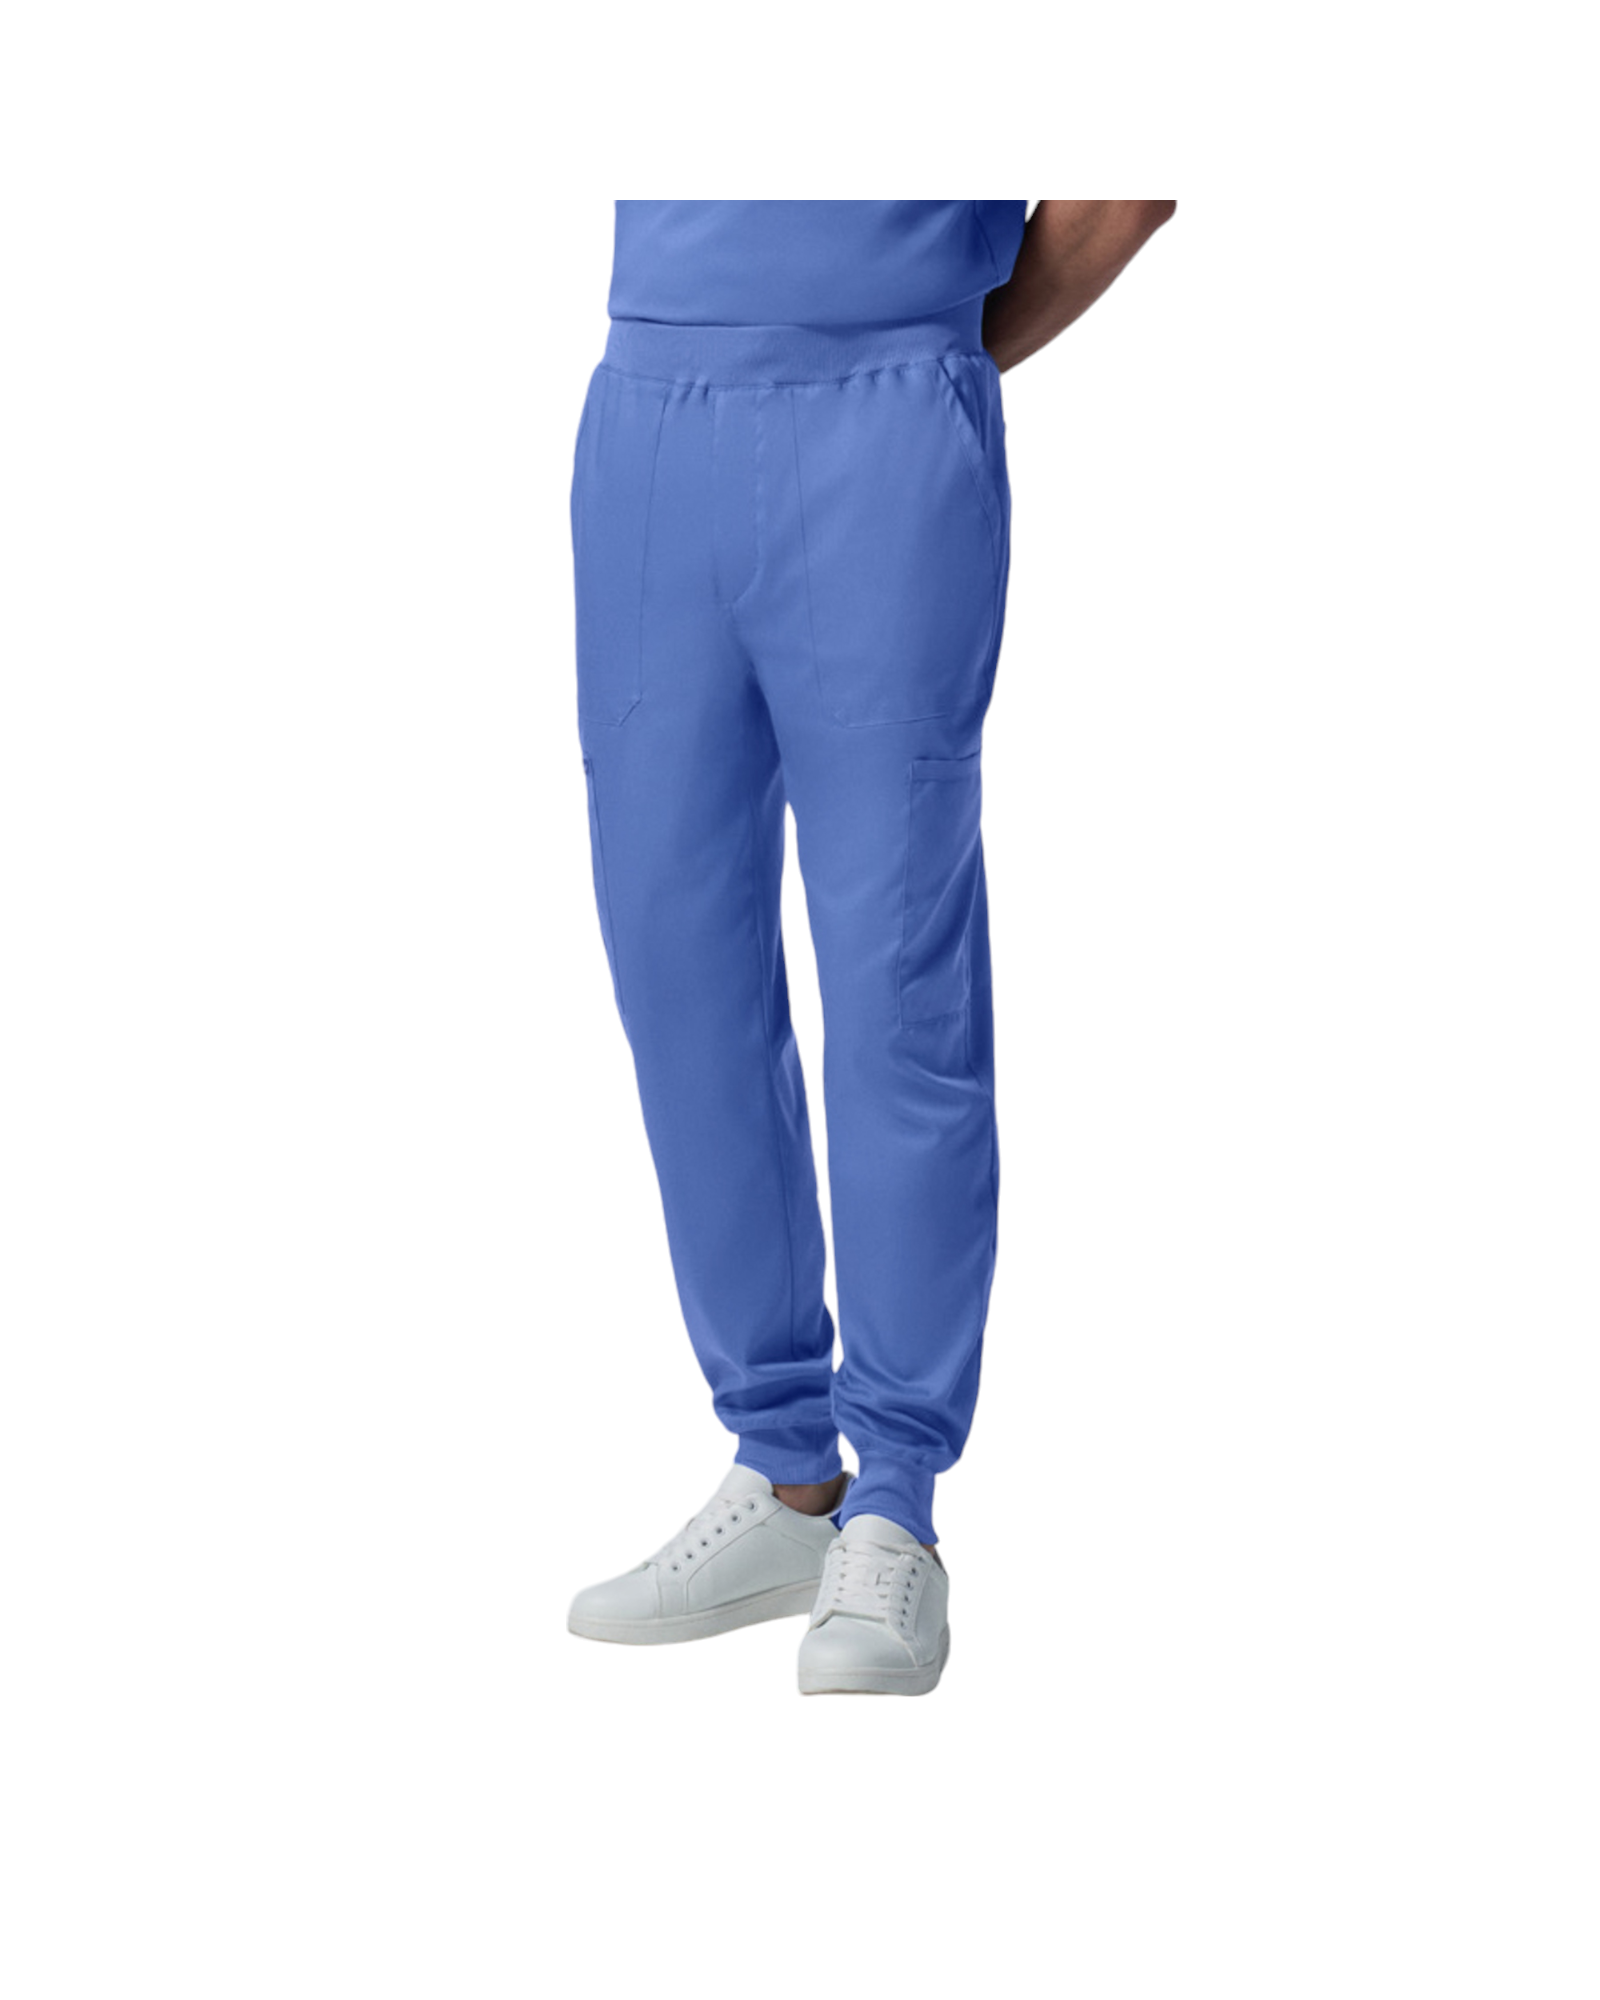 Pantalon jogger pour hommes Landau Proflex #LB407 couleur Bleu ciel